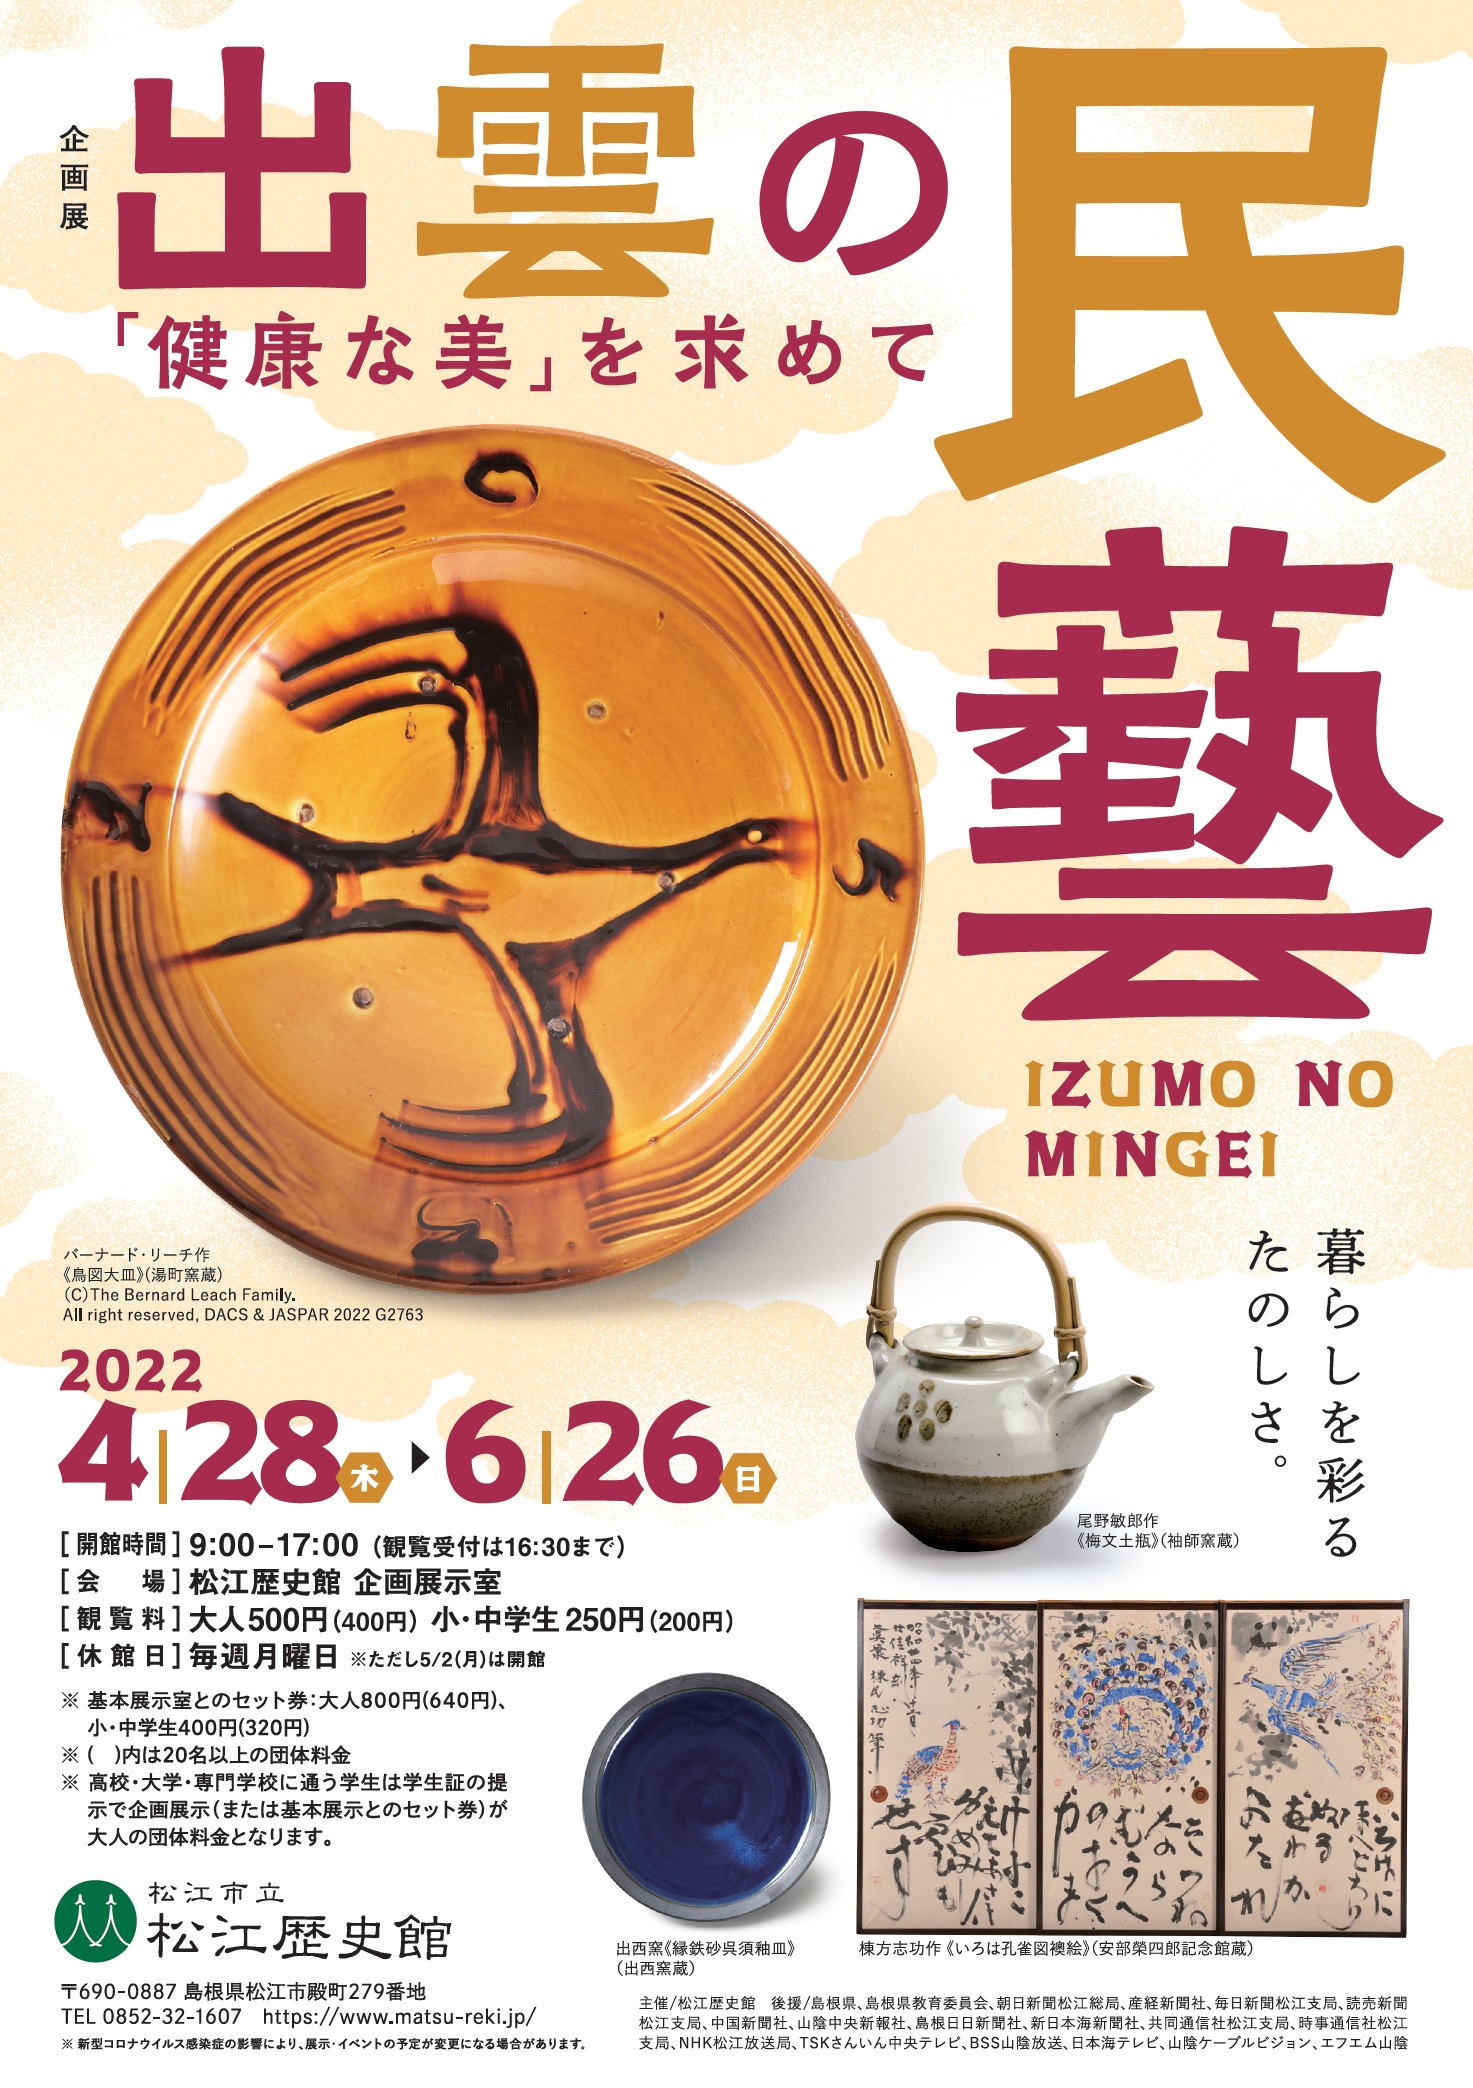 松江歴史館 企画展「出雲の民藝 ー「健康な美」を求めてー」